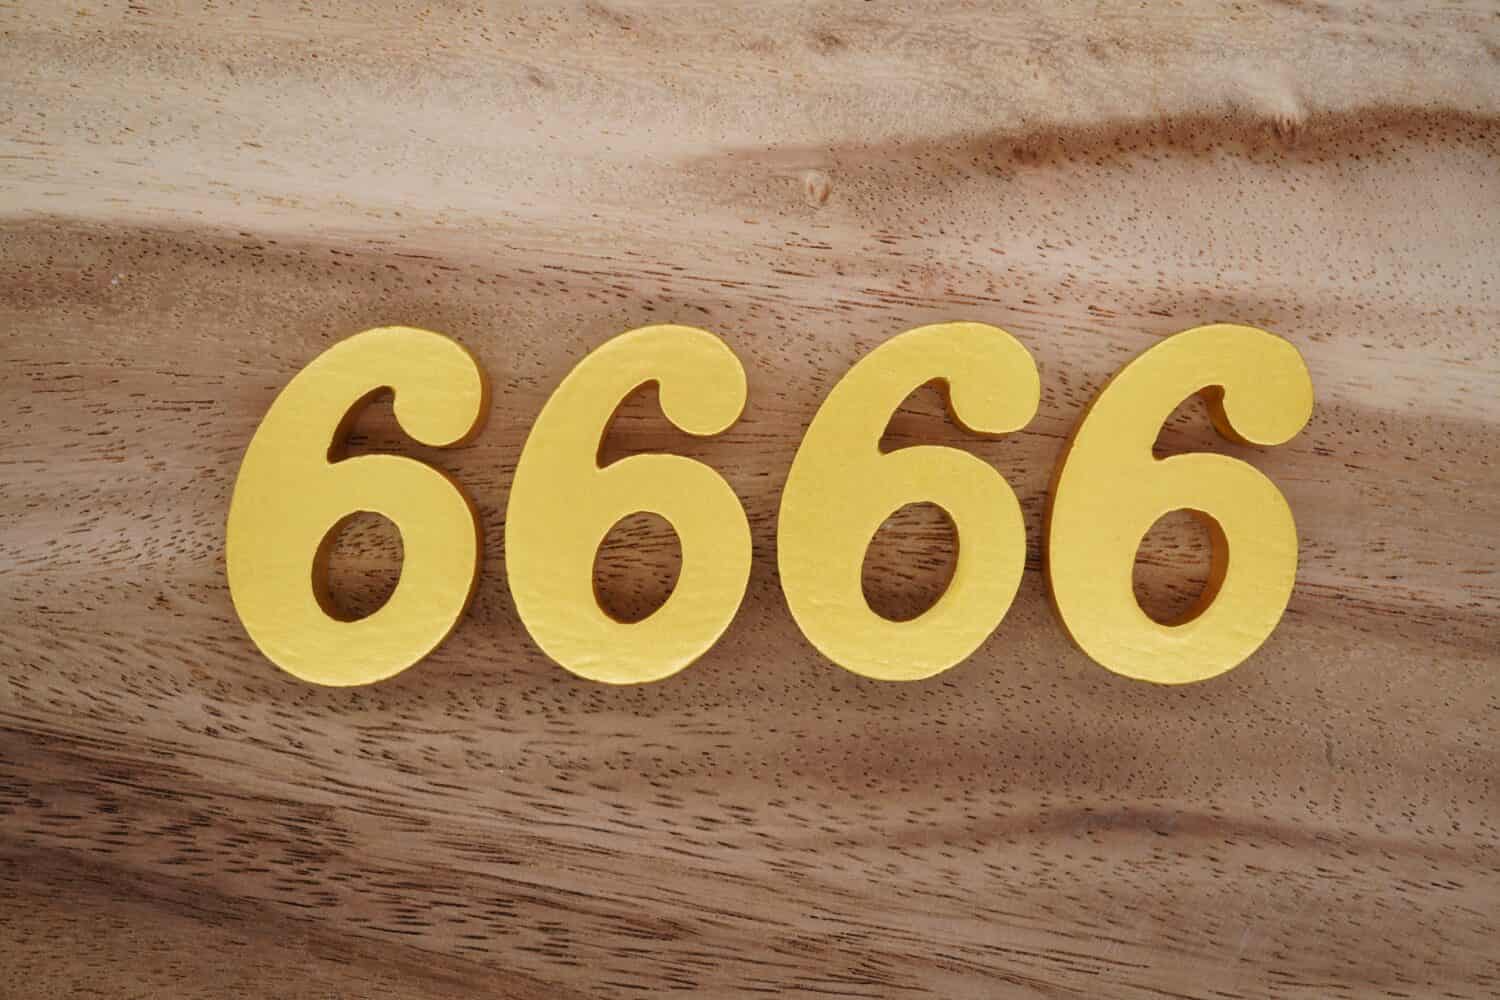 Numeri in legno 6666 dipinti in oro su uno sfondo di tavole fantasia marrone scuro e bianco.